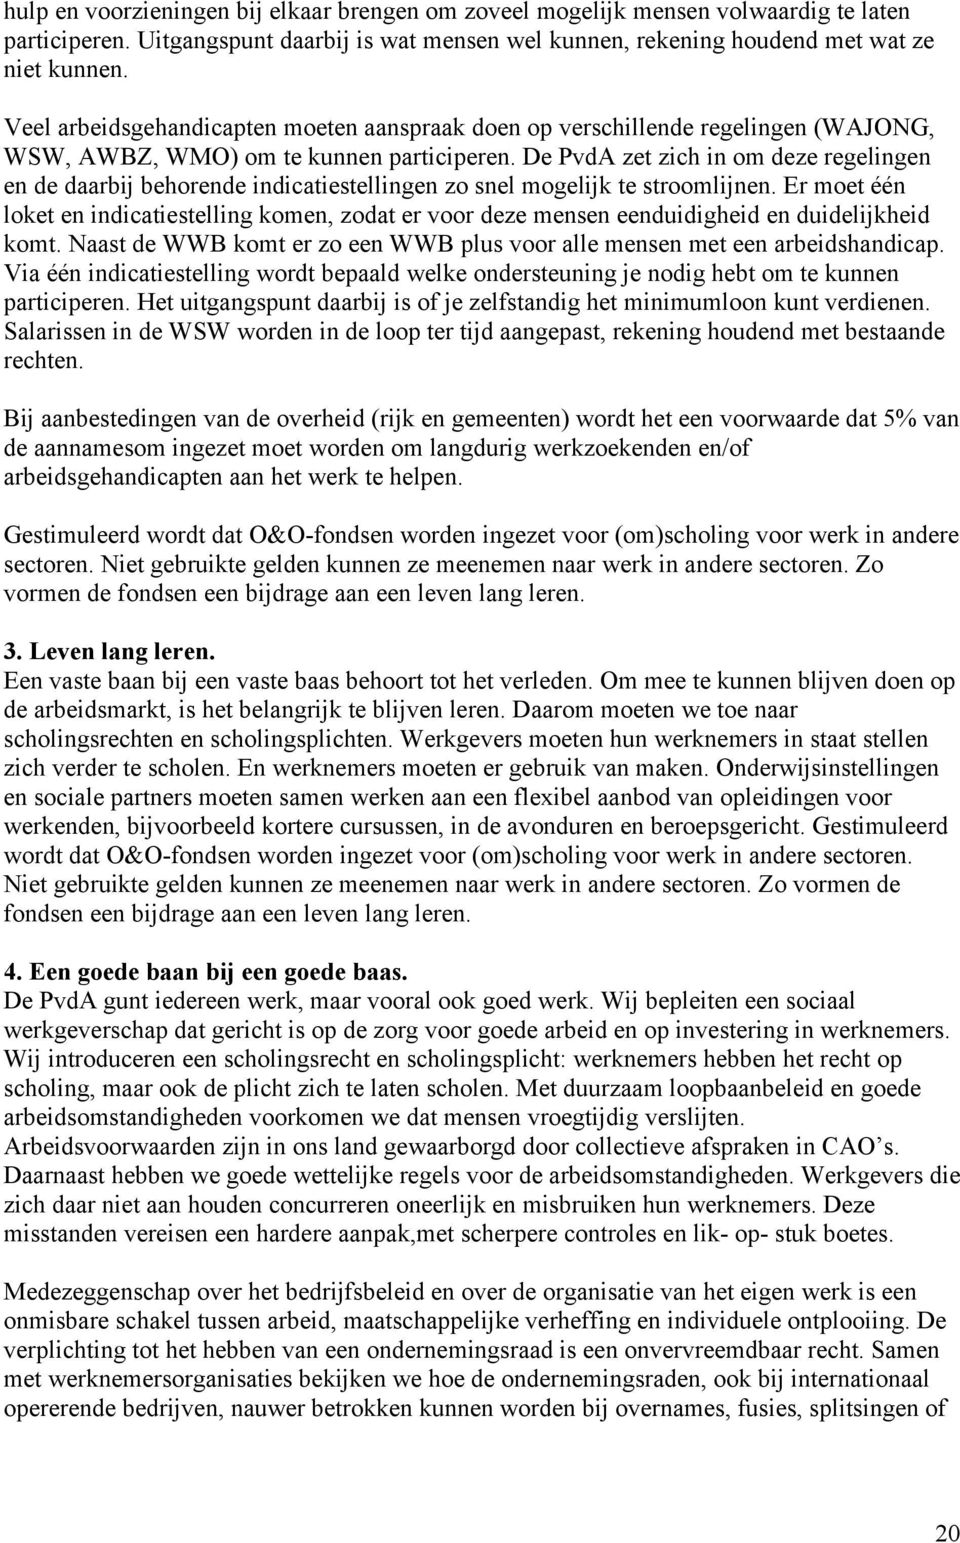 De PvdA zet zich in om deze regelingen en de daarbij behorende indicatiestellingen zo snel mogelijk te stroomlijnen.